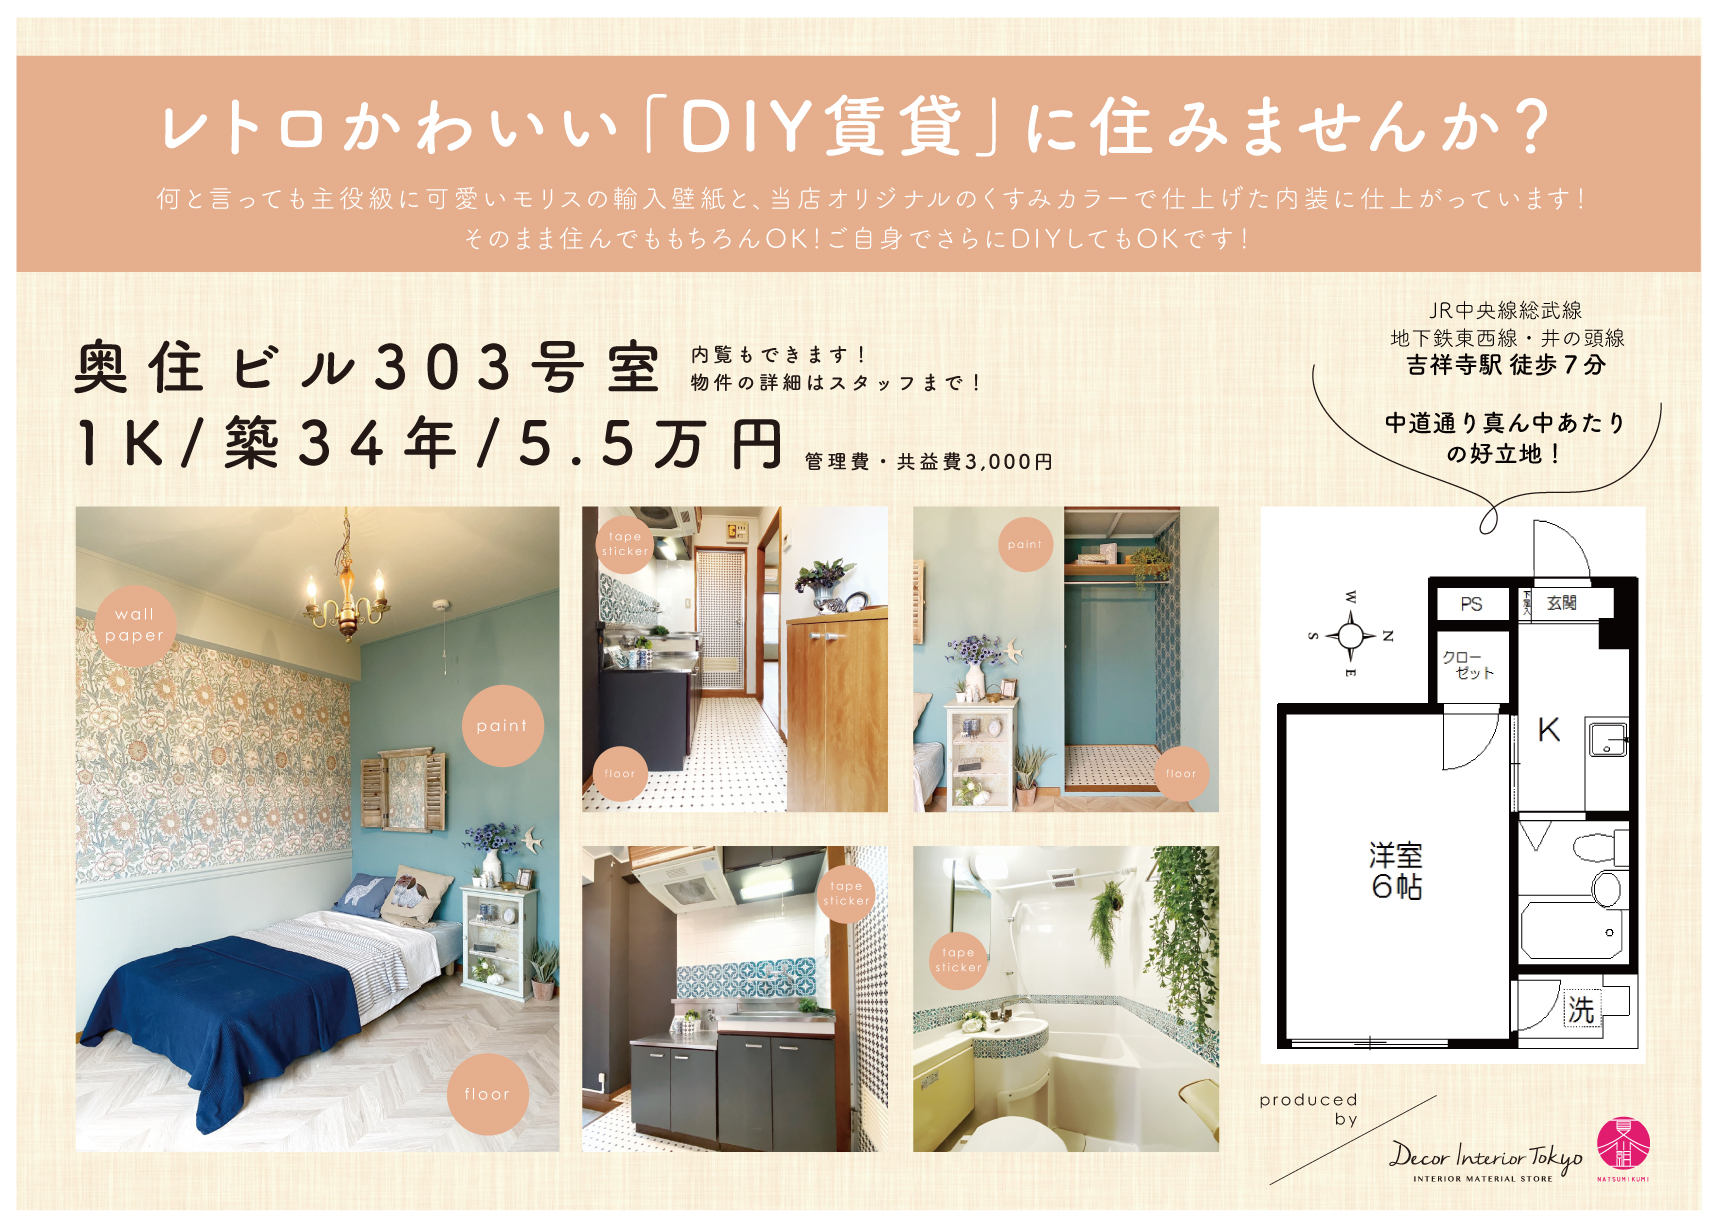 【Decor Interior Tokyo】吉祥寺でDIY可能物件に住みませんか？ー当店がプロデュースするDIYのモデルルームも公開中！